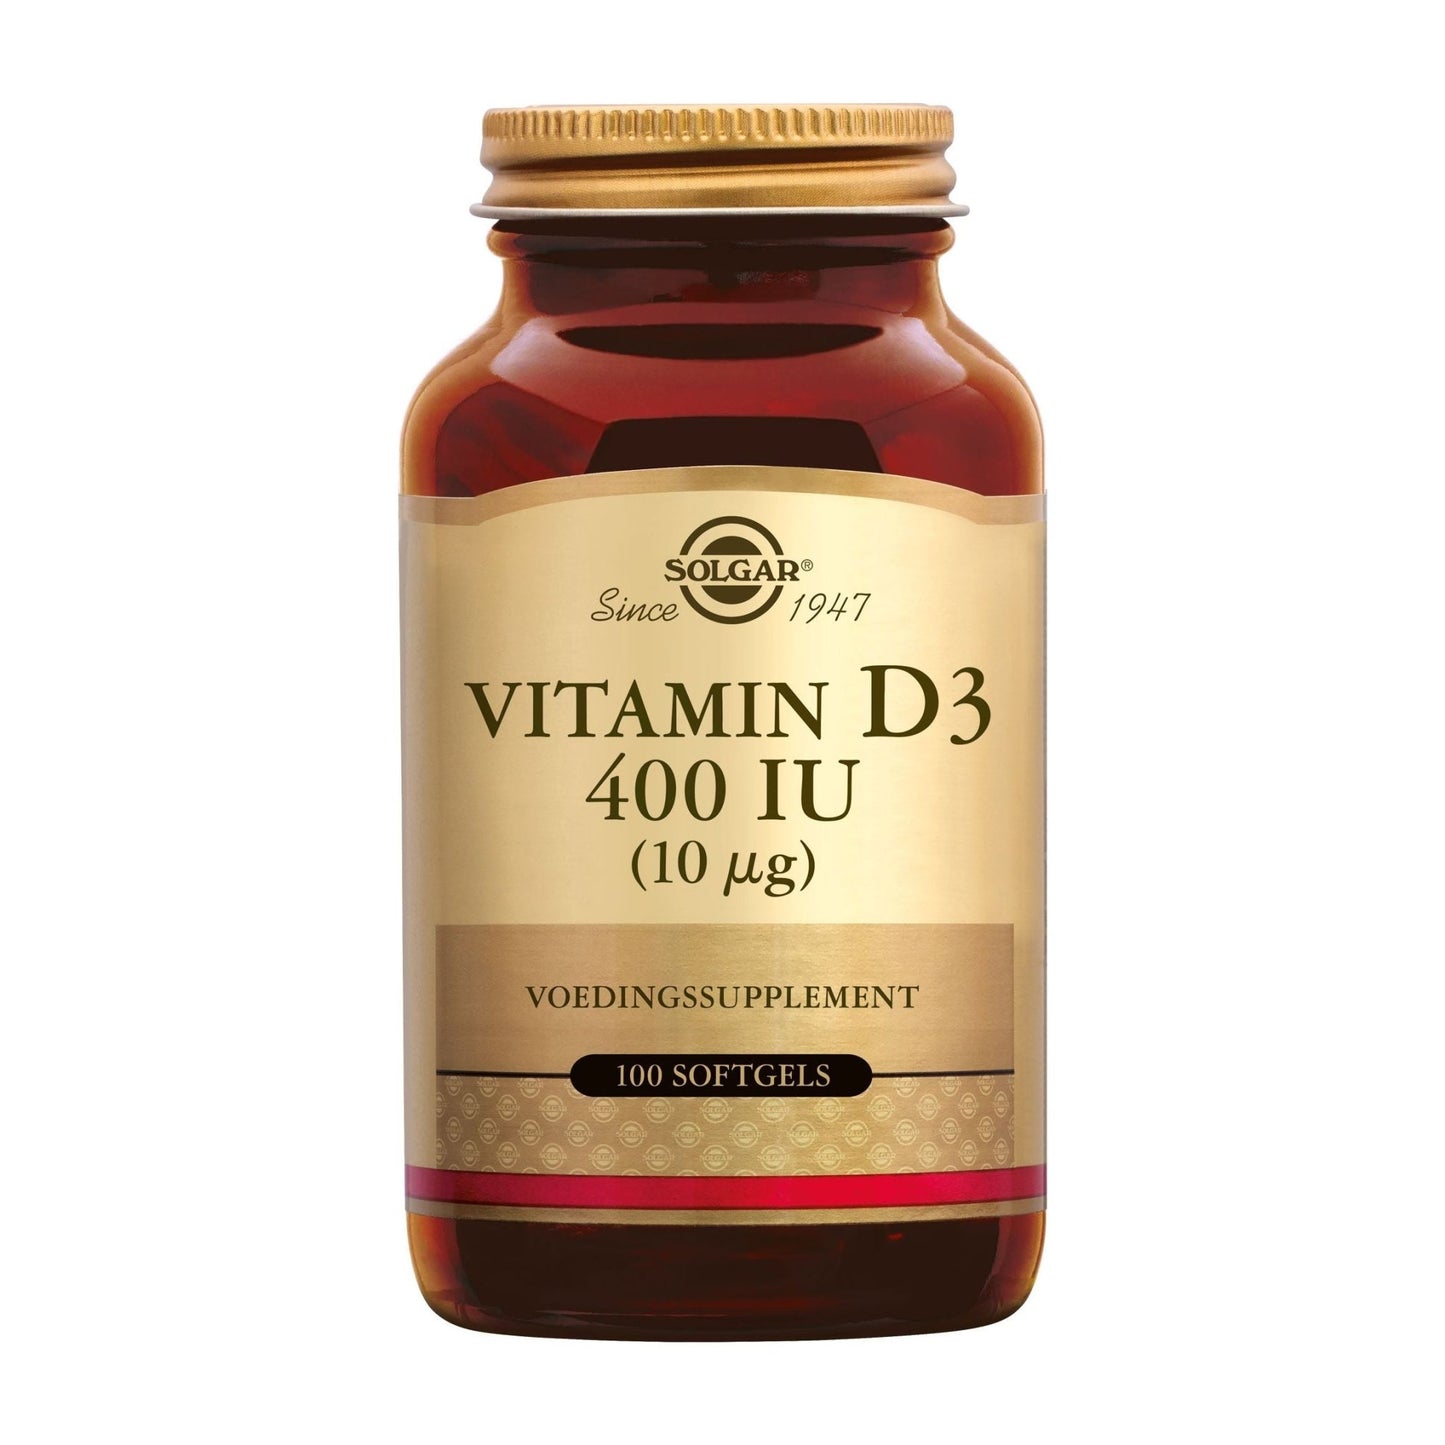 Vitamine D-3 400 IU softgels Supplement Solgar   